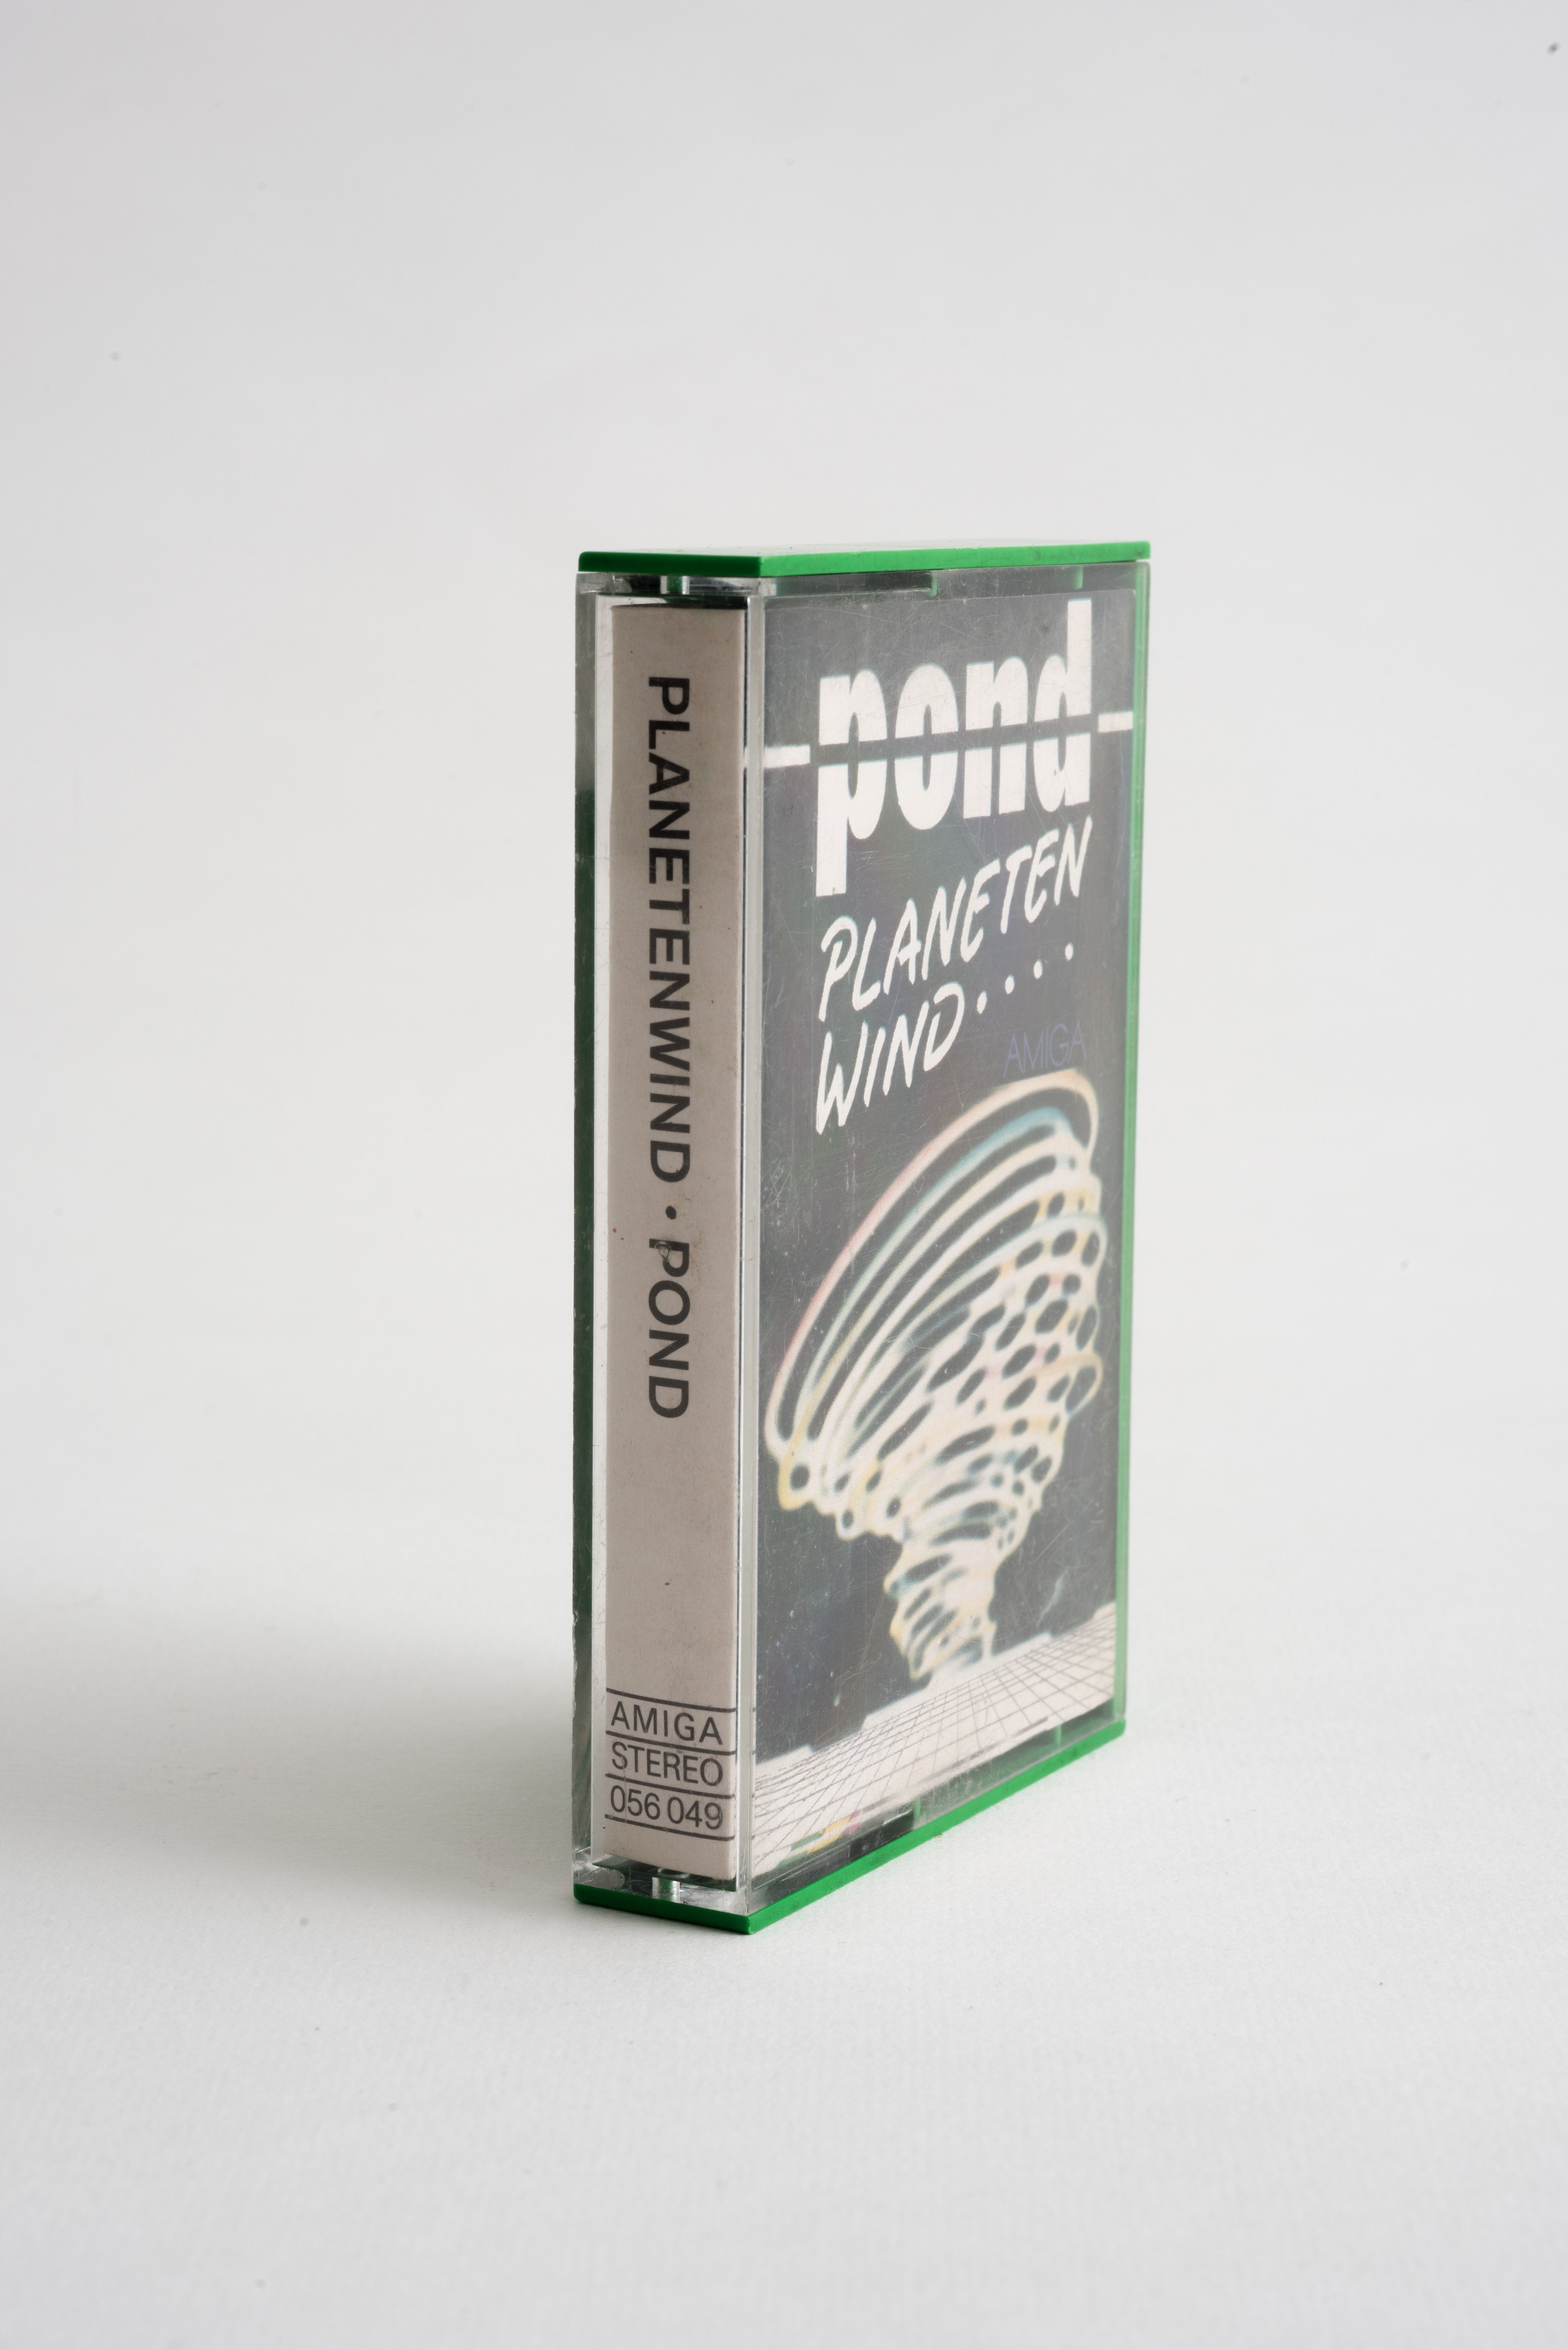 "Pond - Planetenwind" Amiga Kompaktkassette (Museum Utopie und Alltag. Alltagskultur und Kunst aus der DDR CC BY-NC-SA)